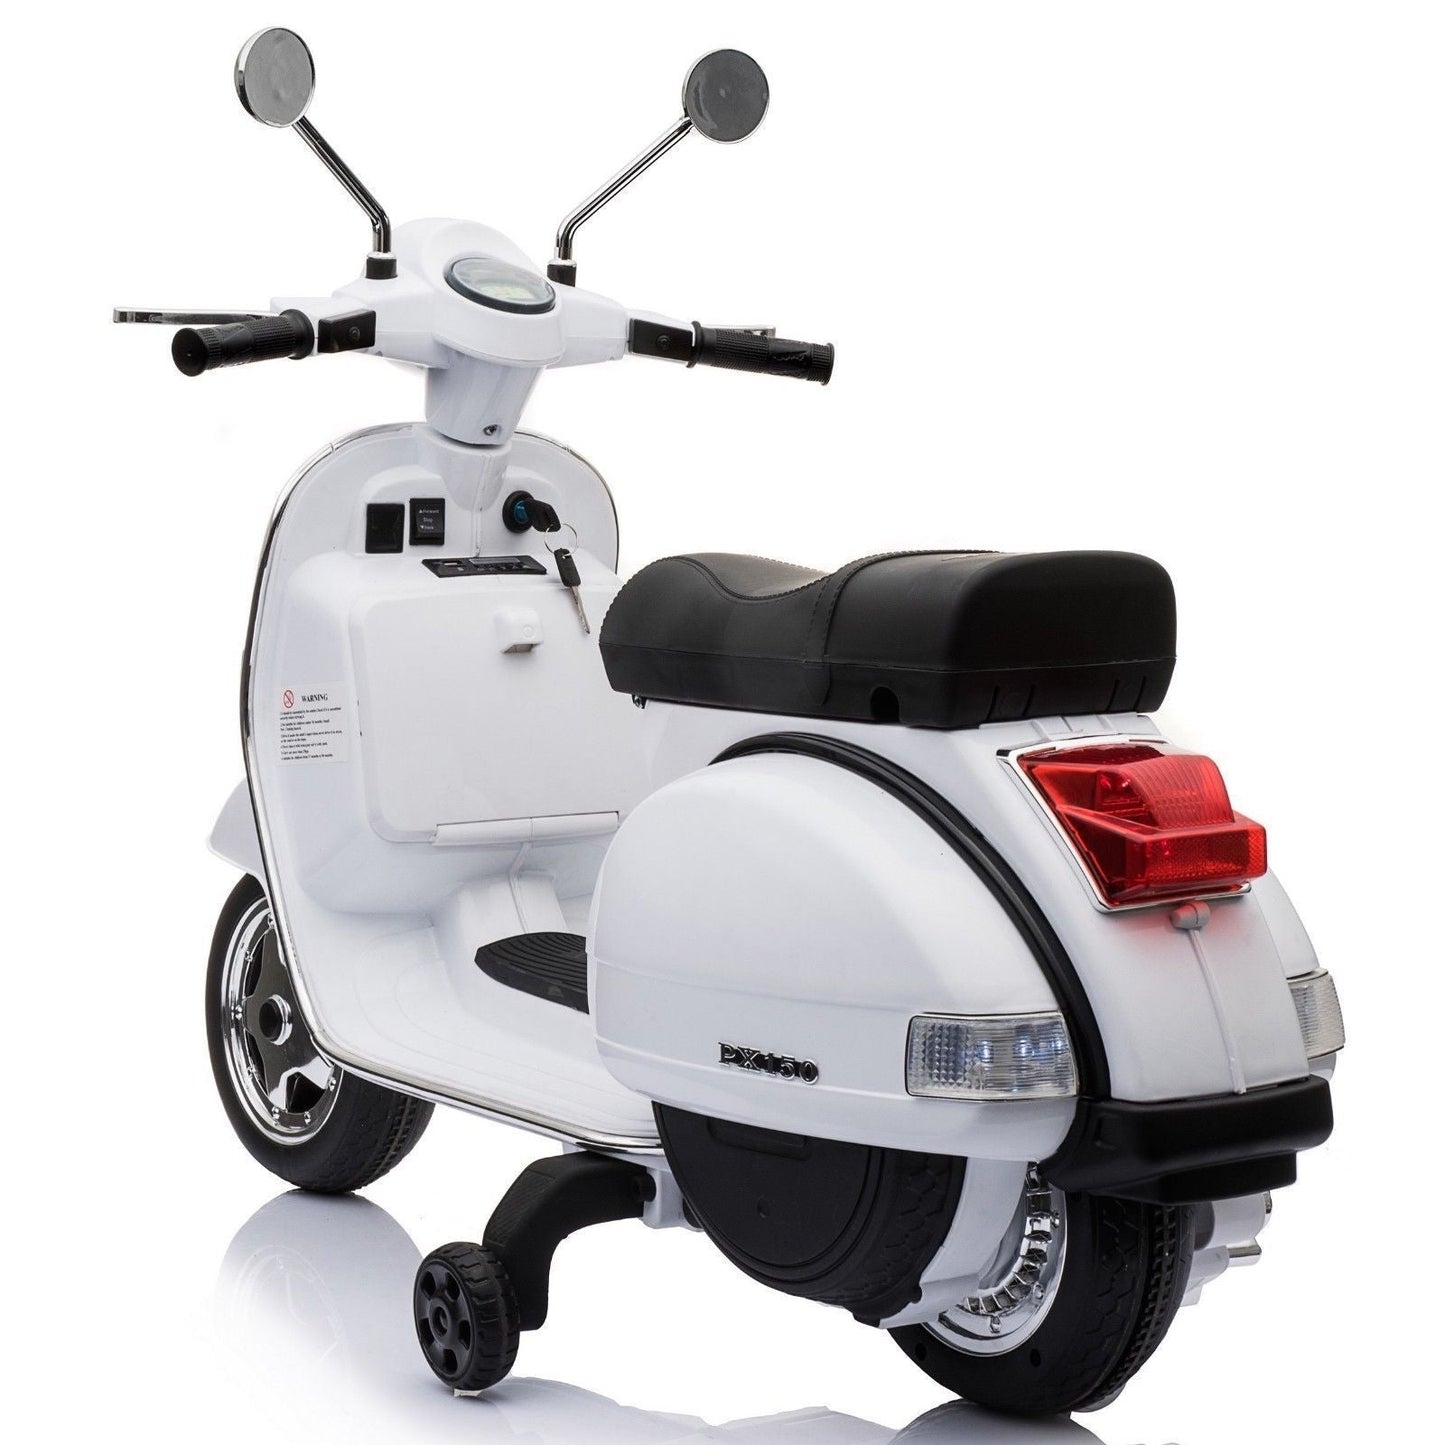 Vespa 12v scooter/ Vespa Toy scooter for kids